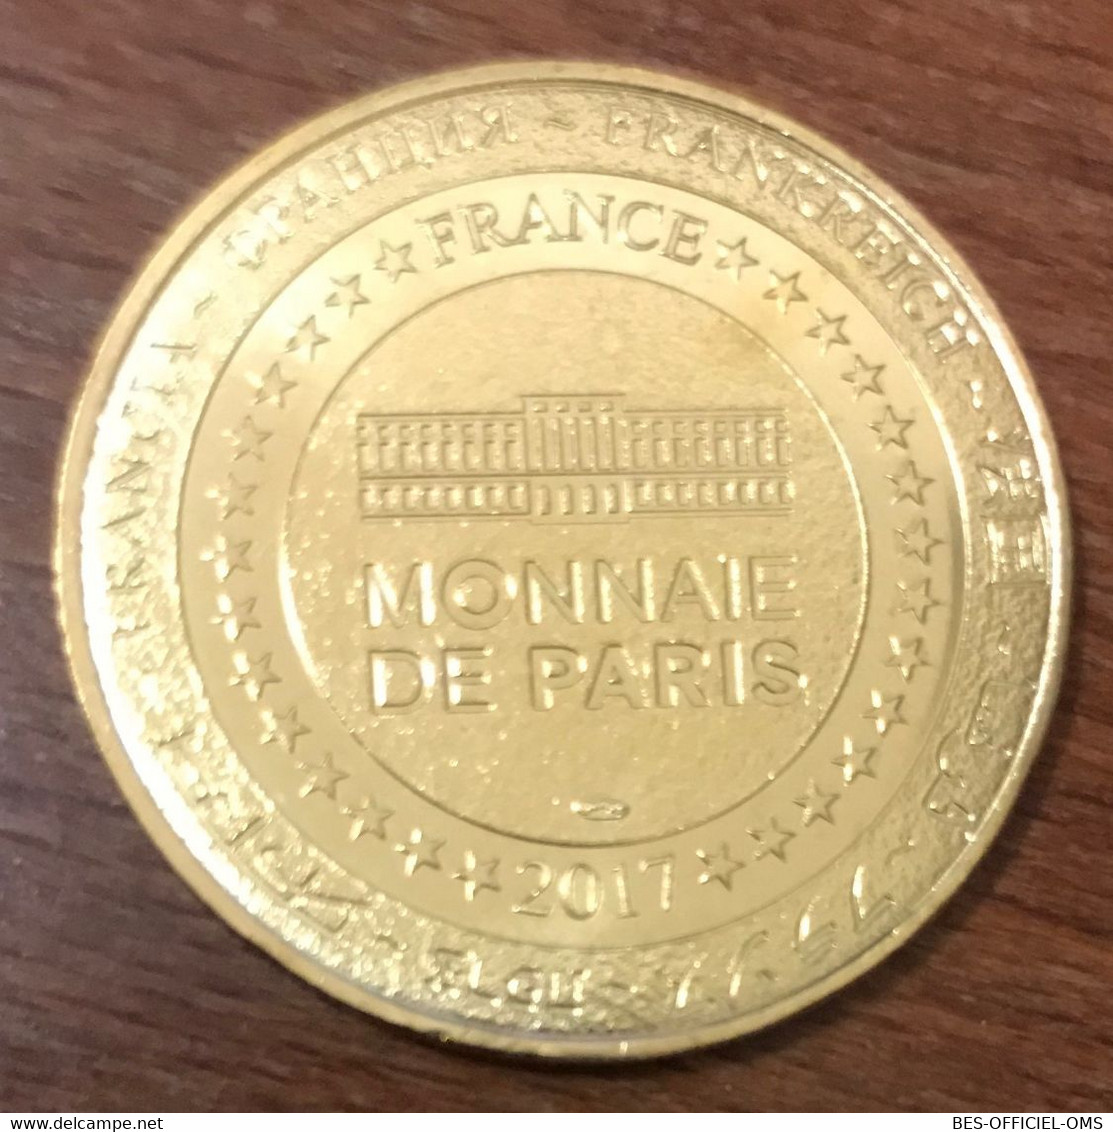 12 ABBATIALE DE CONQUES MDP 2017 MÉDAILLE SOUVENIR MONNAIE DE PARIS JETON TOURISTIQUE MEDALS TOKENS COINS - 2017